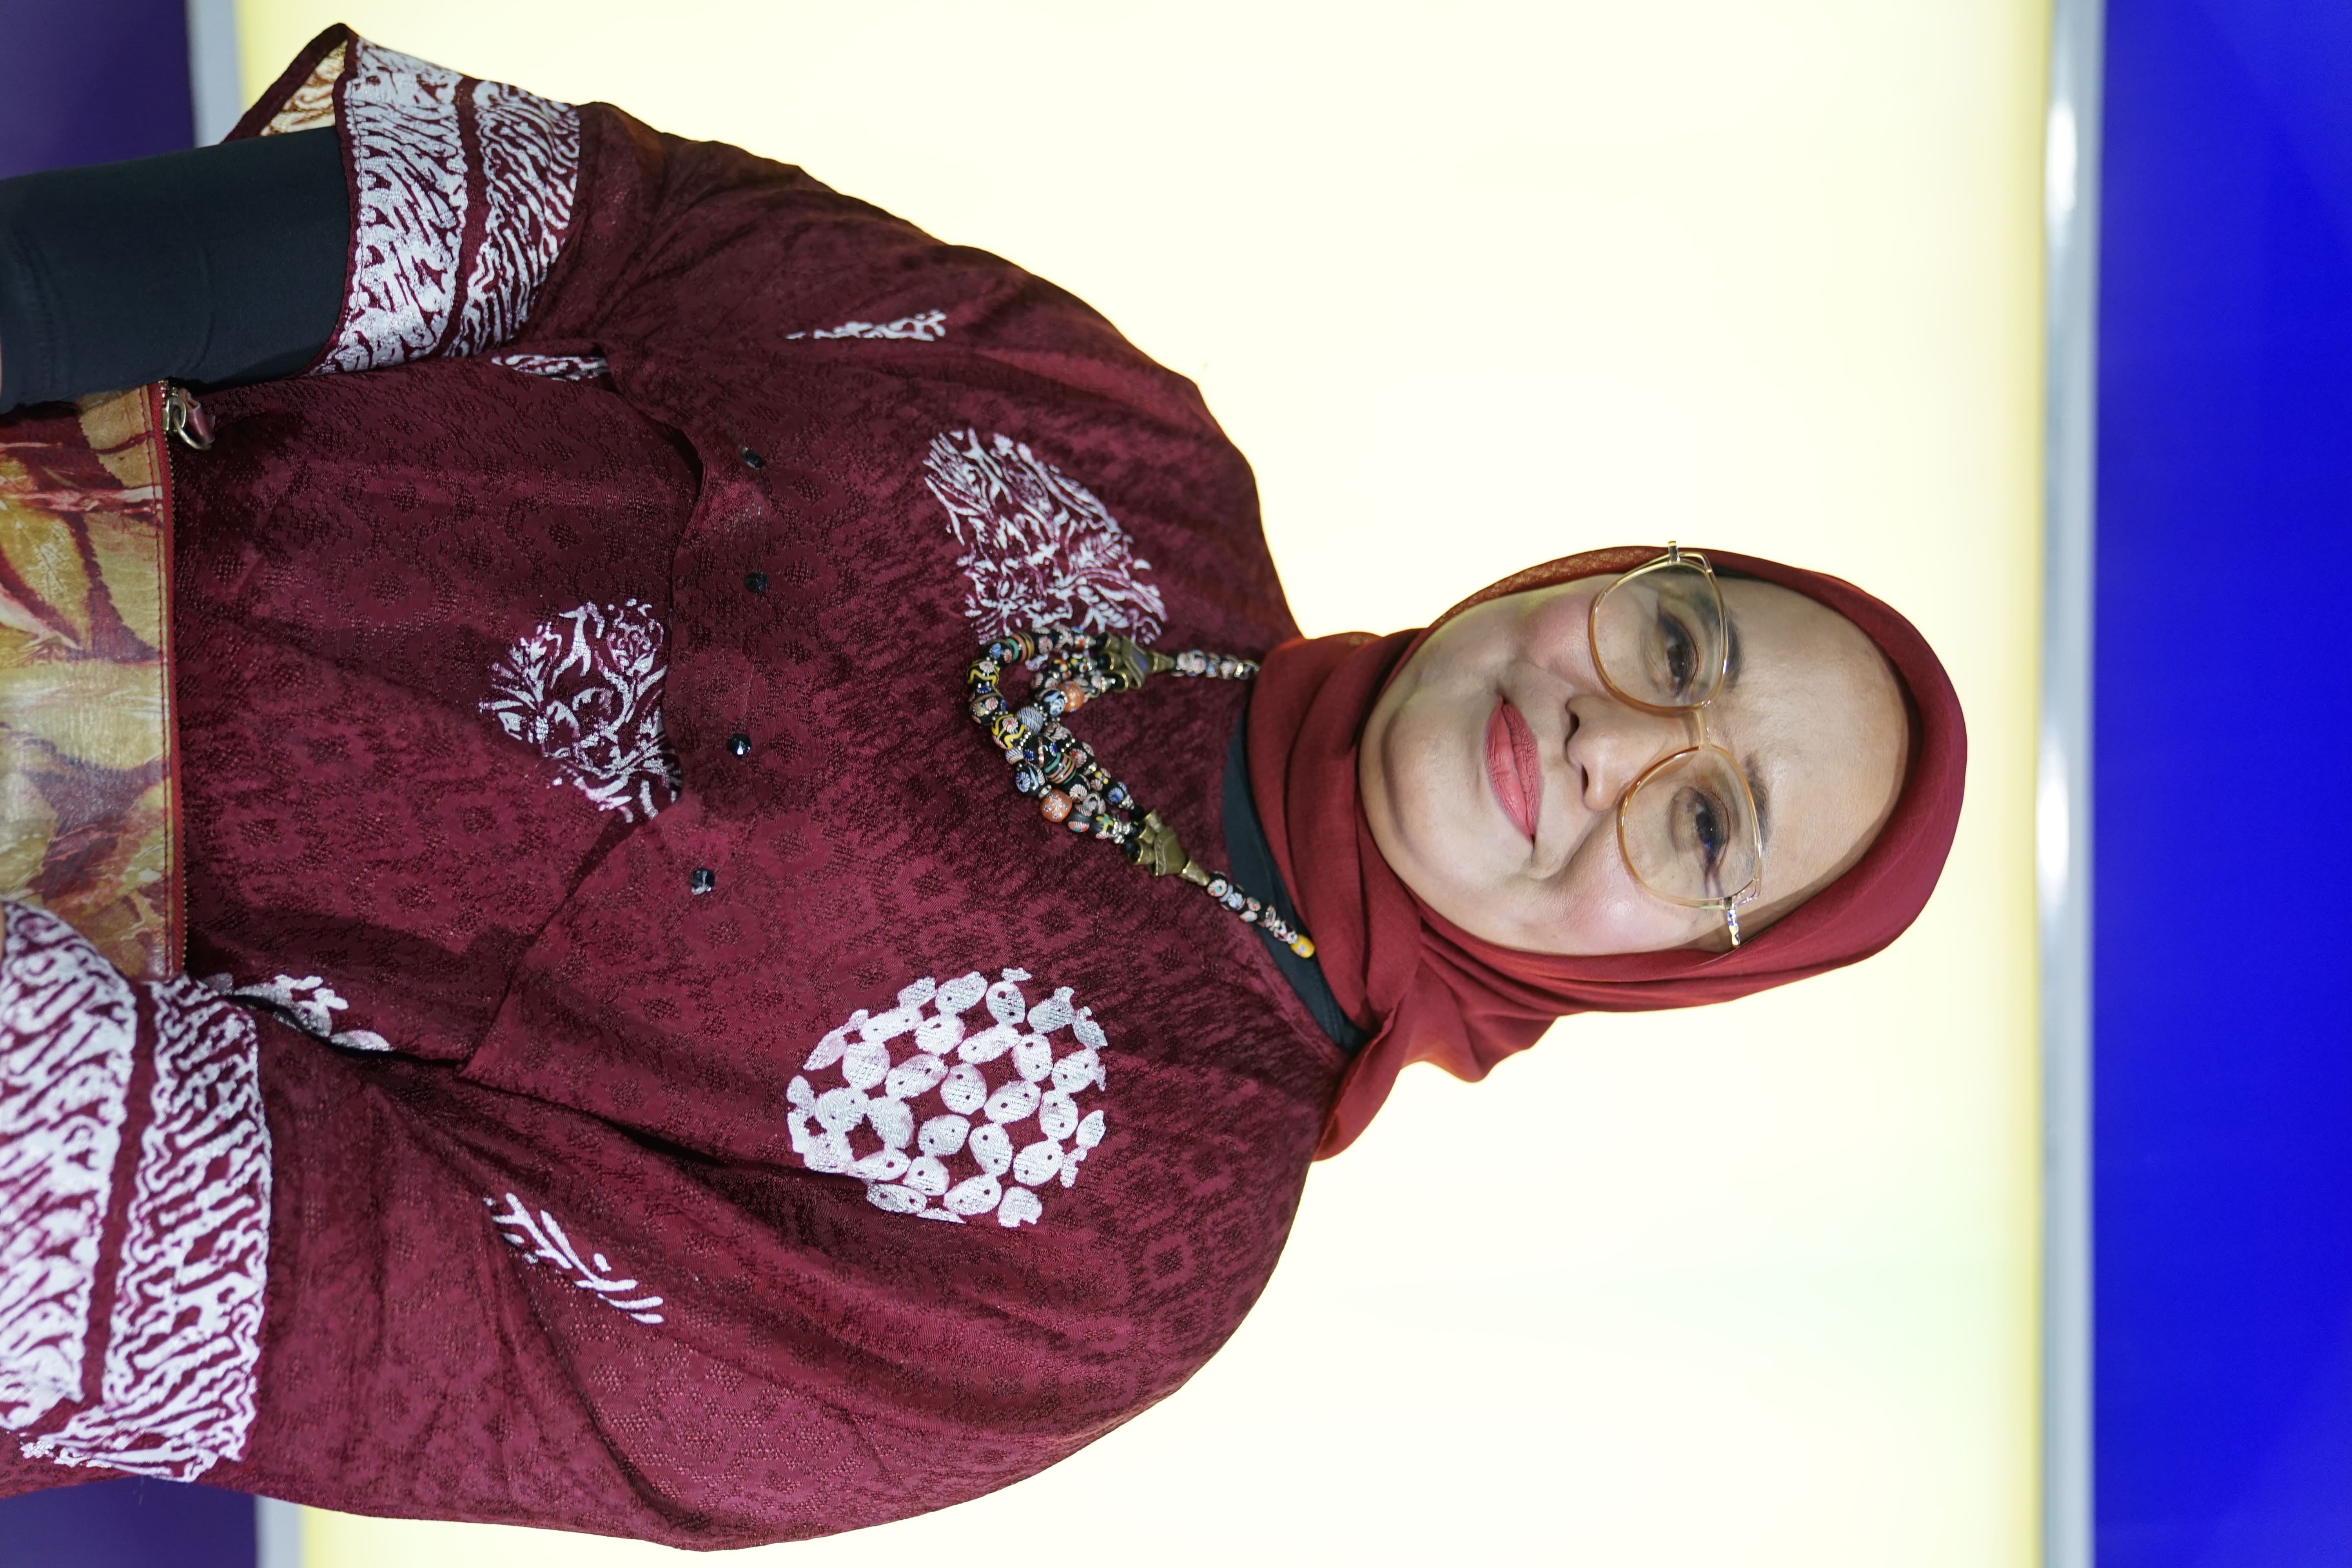 Anggota Komisi B DPRD Jawa Timur Erma Susanti mendorong perempuan-perempuan, khususnya di Jawa Timur untuk turut berkontribusi di dunia politik